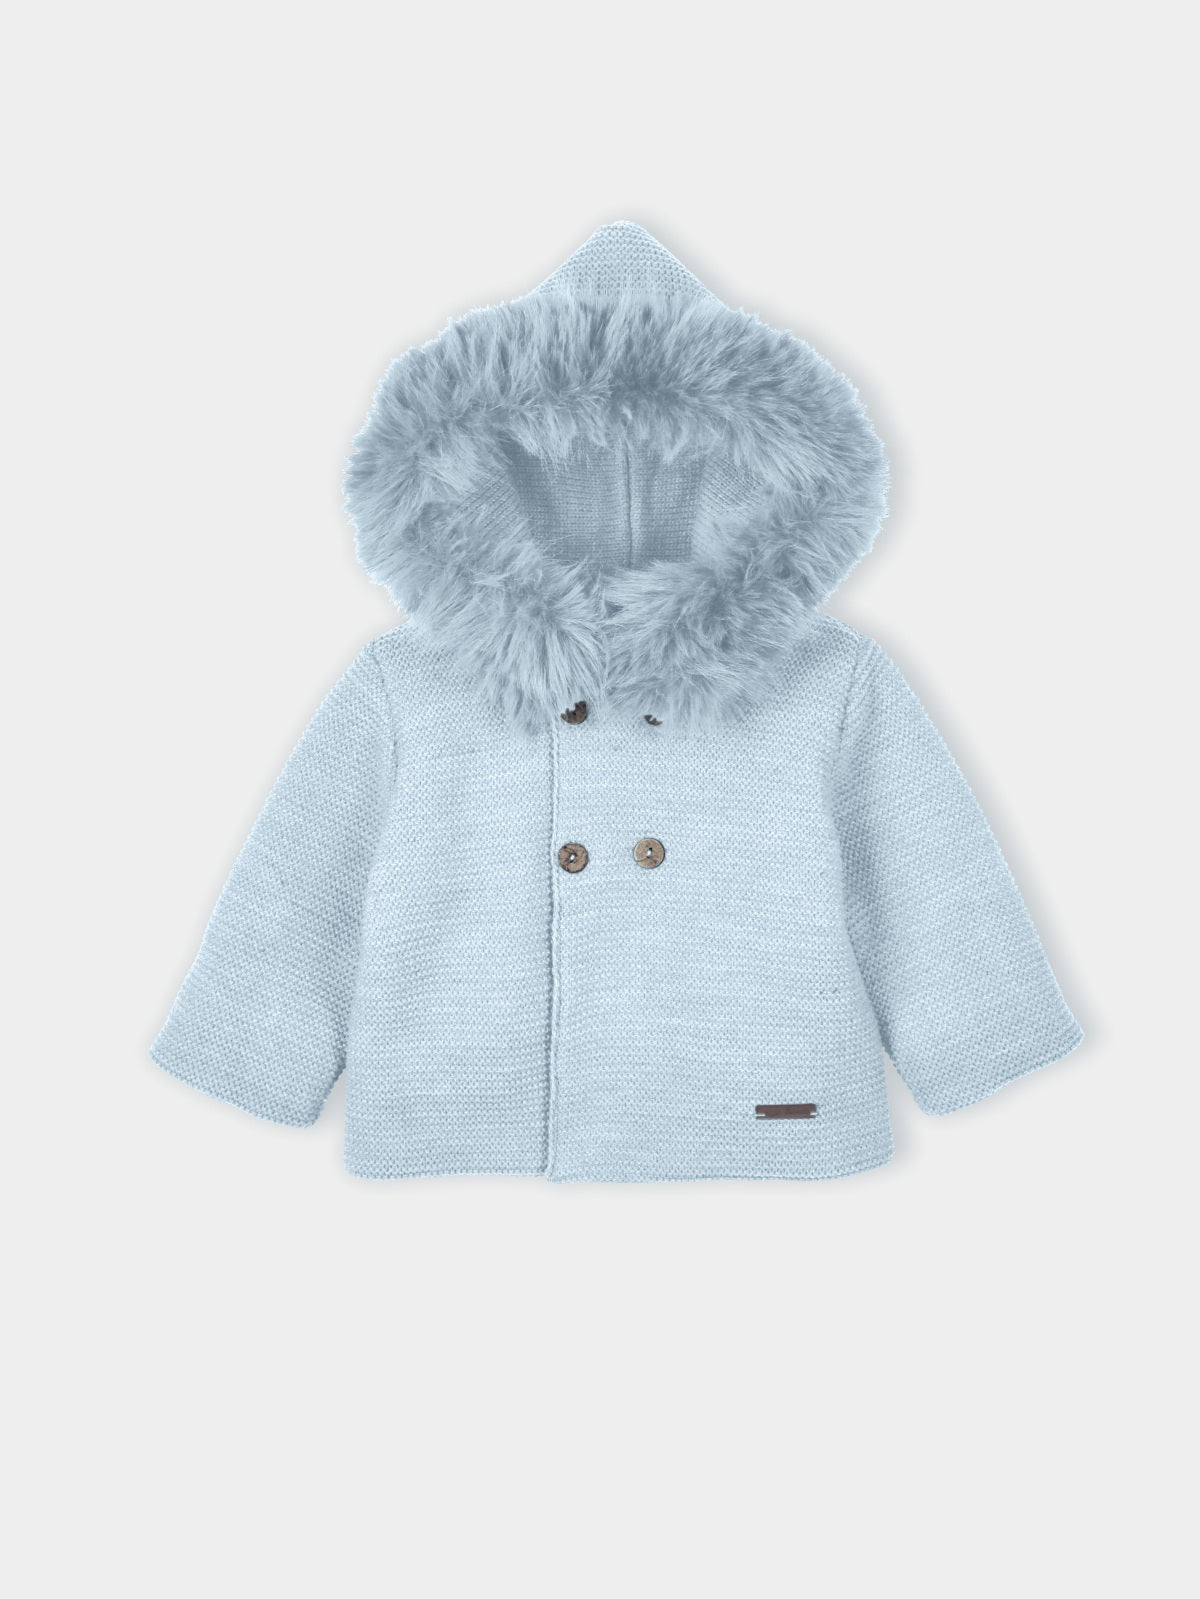 Mac Ilusion Unisex Baby Blue Knit Hooded Jacket